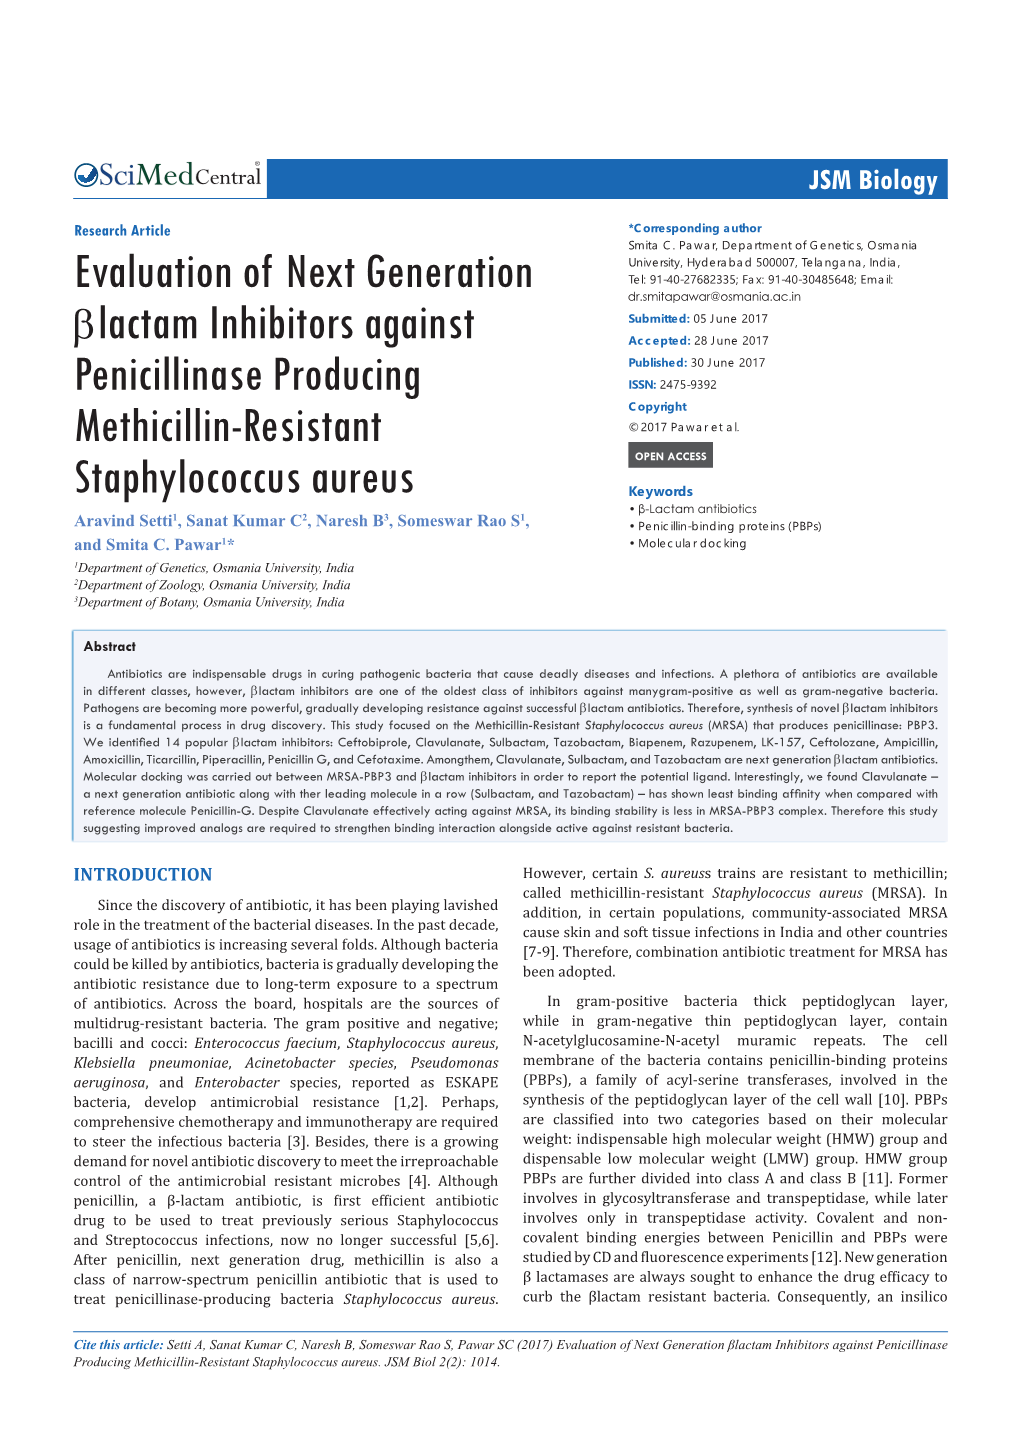 Evaluation of Next Generation Βlactam Inhibitors Against Penicillinase Producing Methicillin-Resistant Staphylococcus Aureus